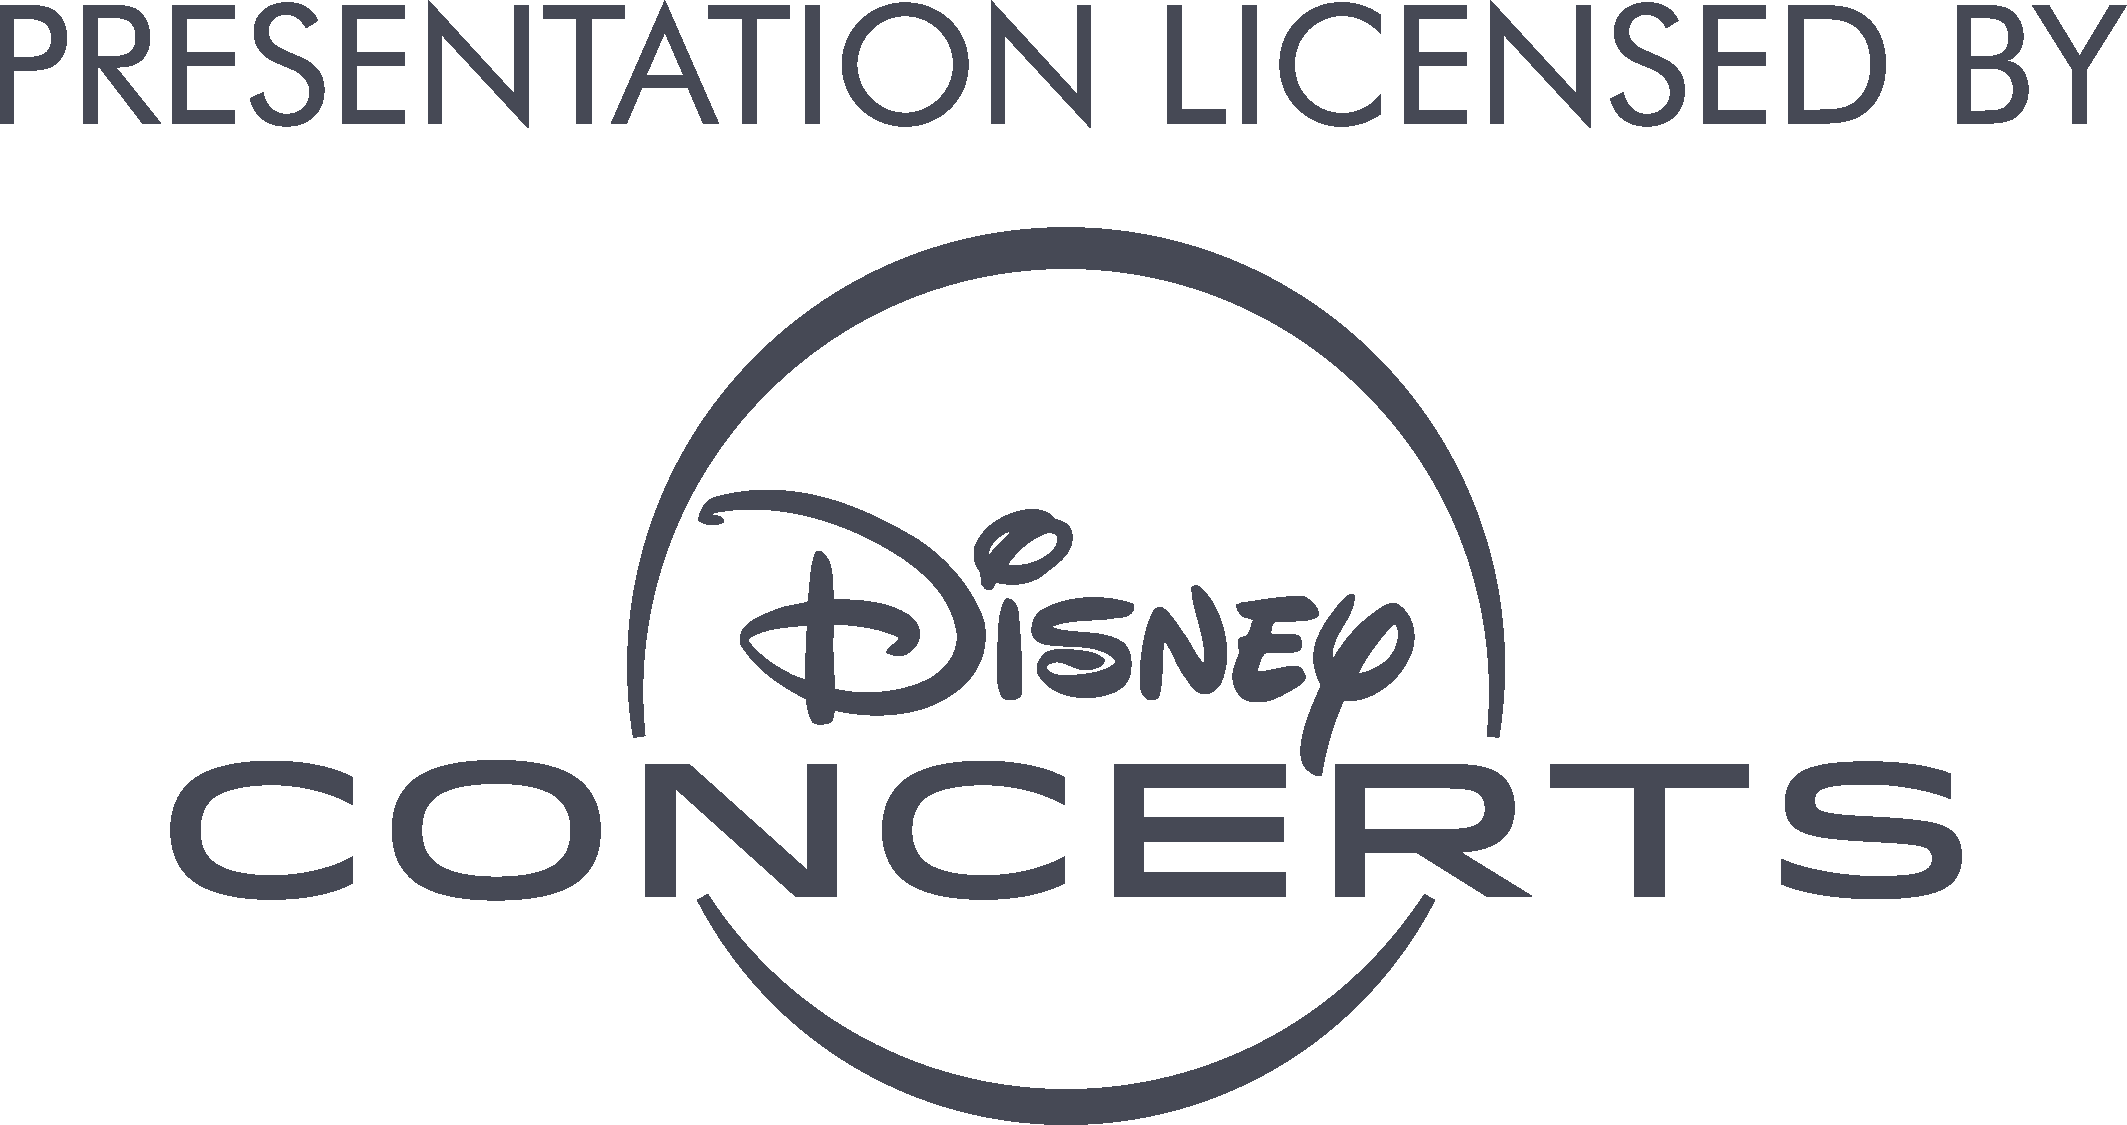 Presentation licensed by Disney Concerts